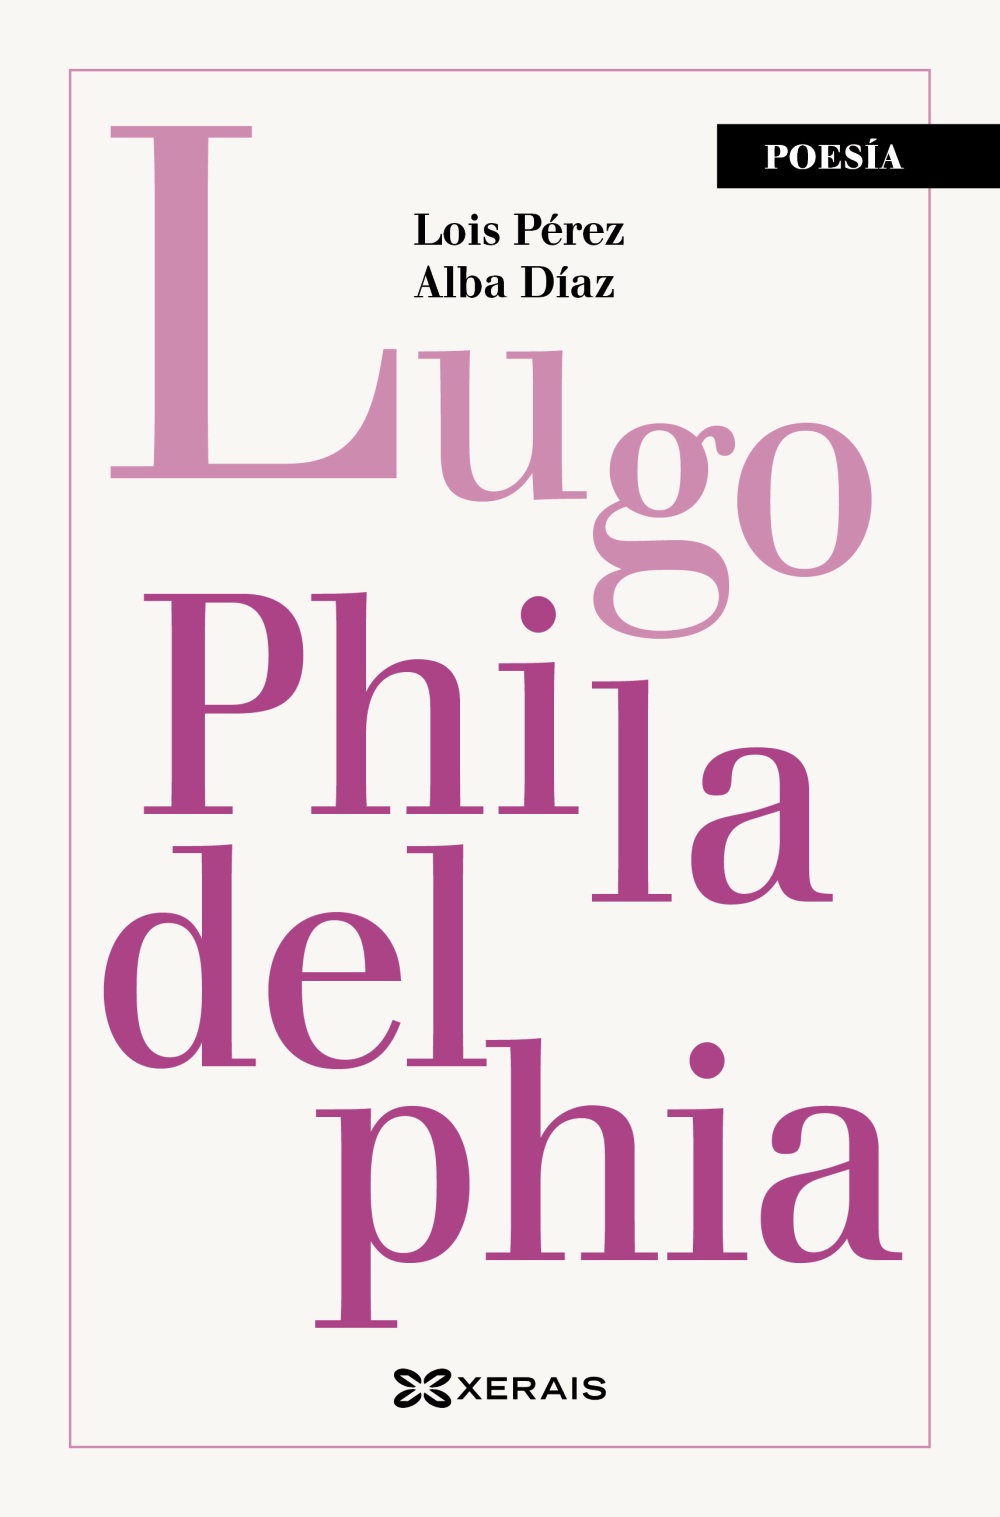 Lugo Philadelphia